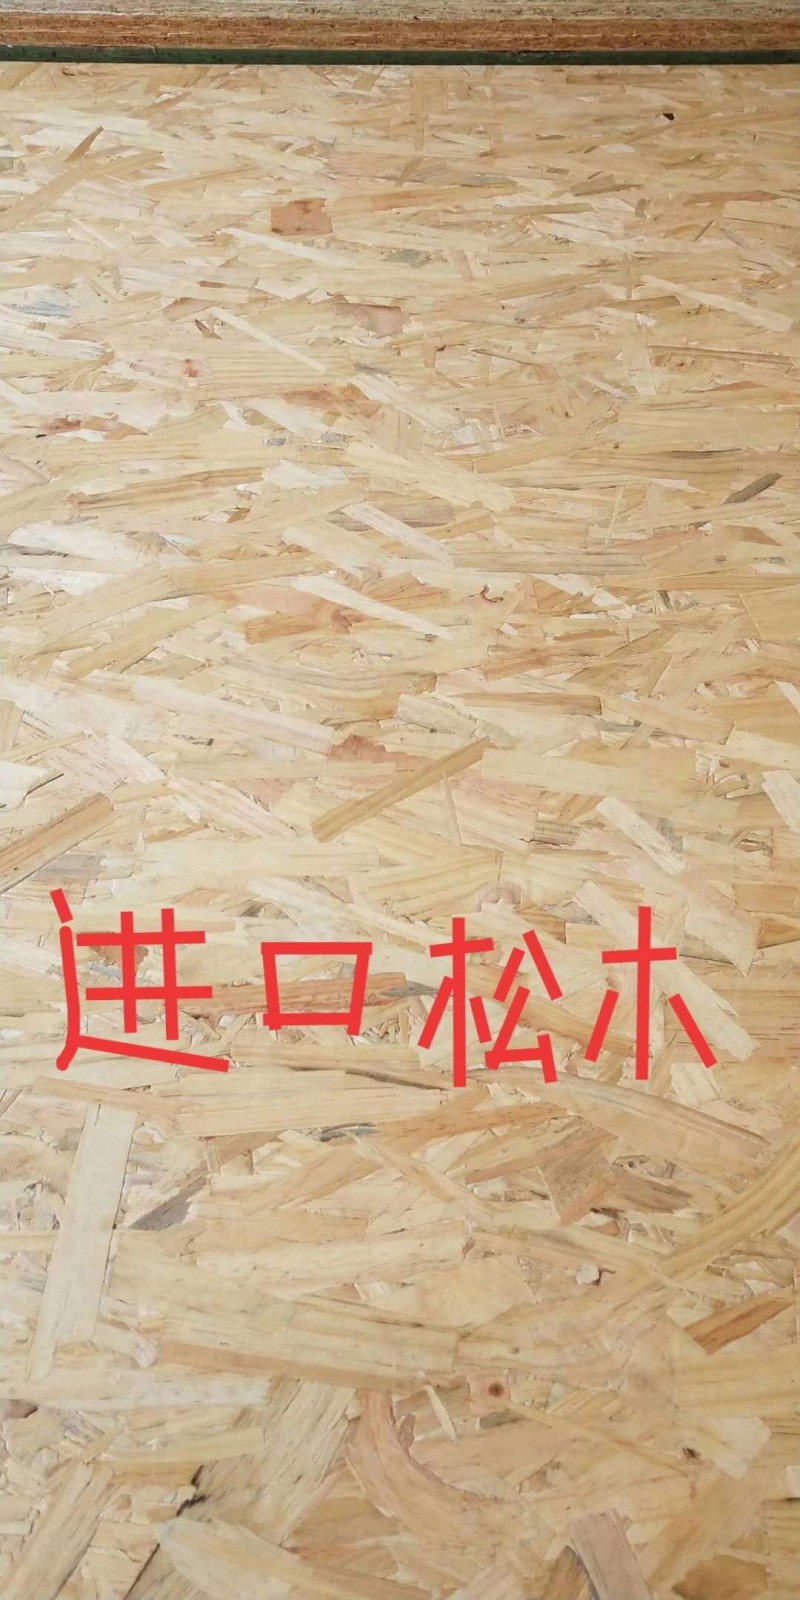 廠家直銷歐松板OSB環保板材E0級刨花板木屋輕鋼別墅裝專用?